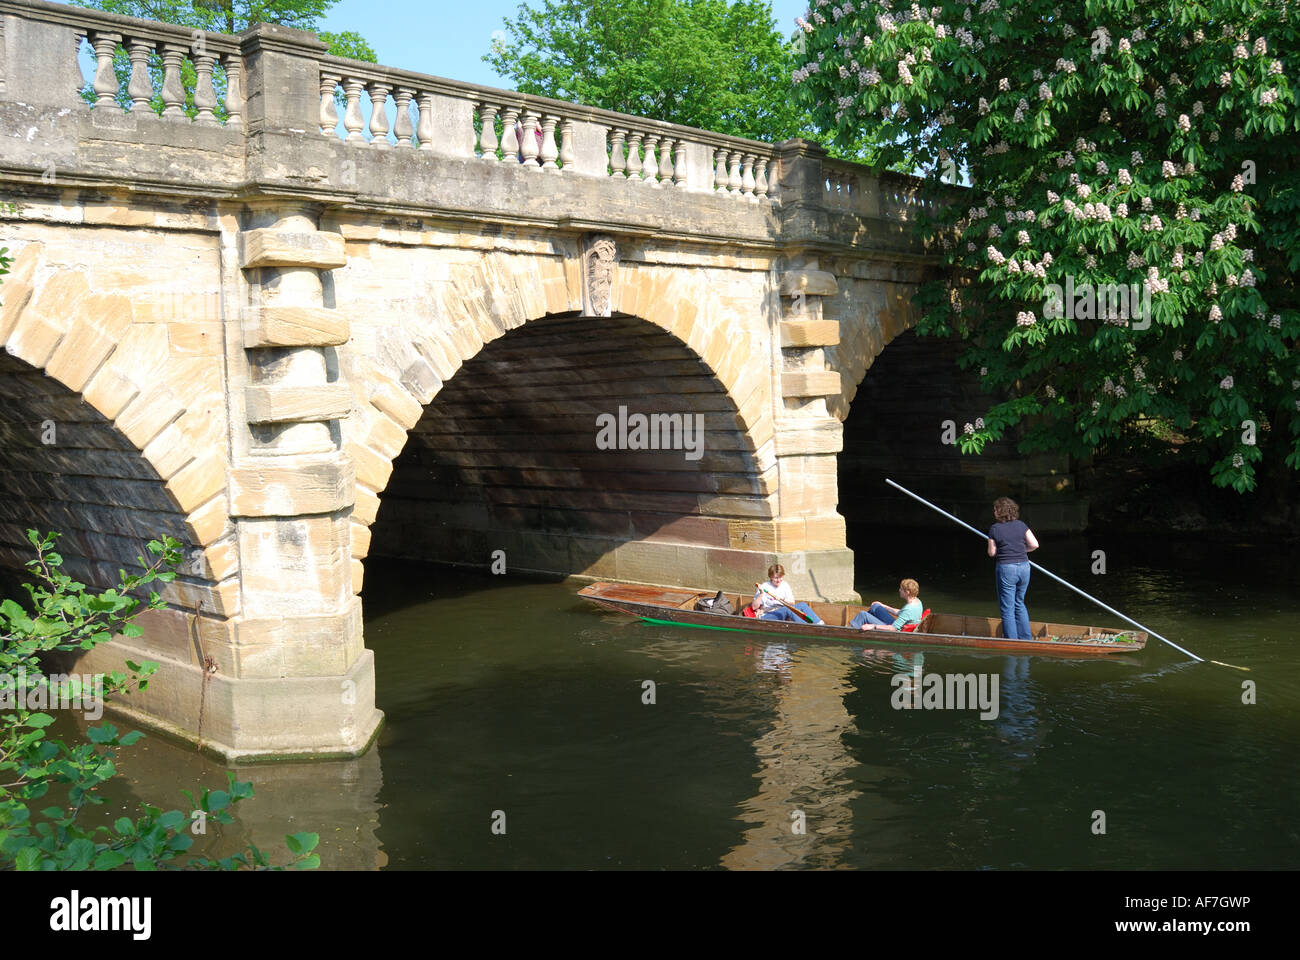 Stechkahn fahren unter Magdalena Brücke am Fluss Cherwell, Oxford, Oxfordshire, England, Vereinigtes Königreich Stockfoto